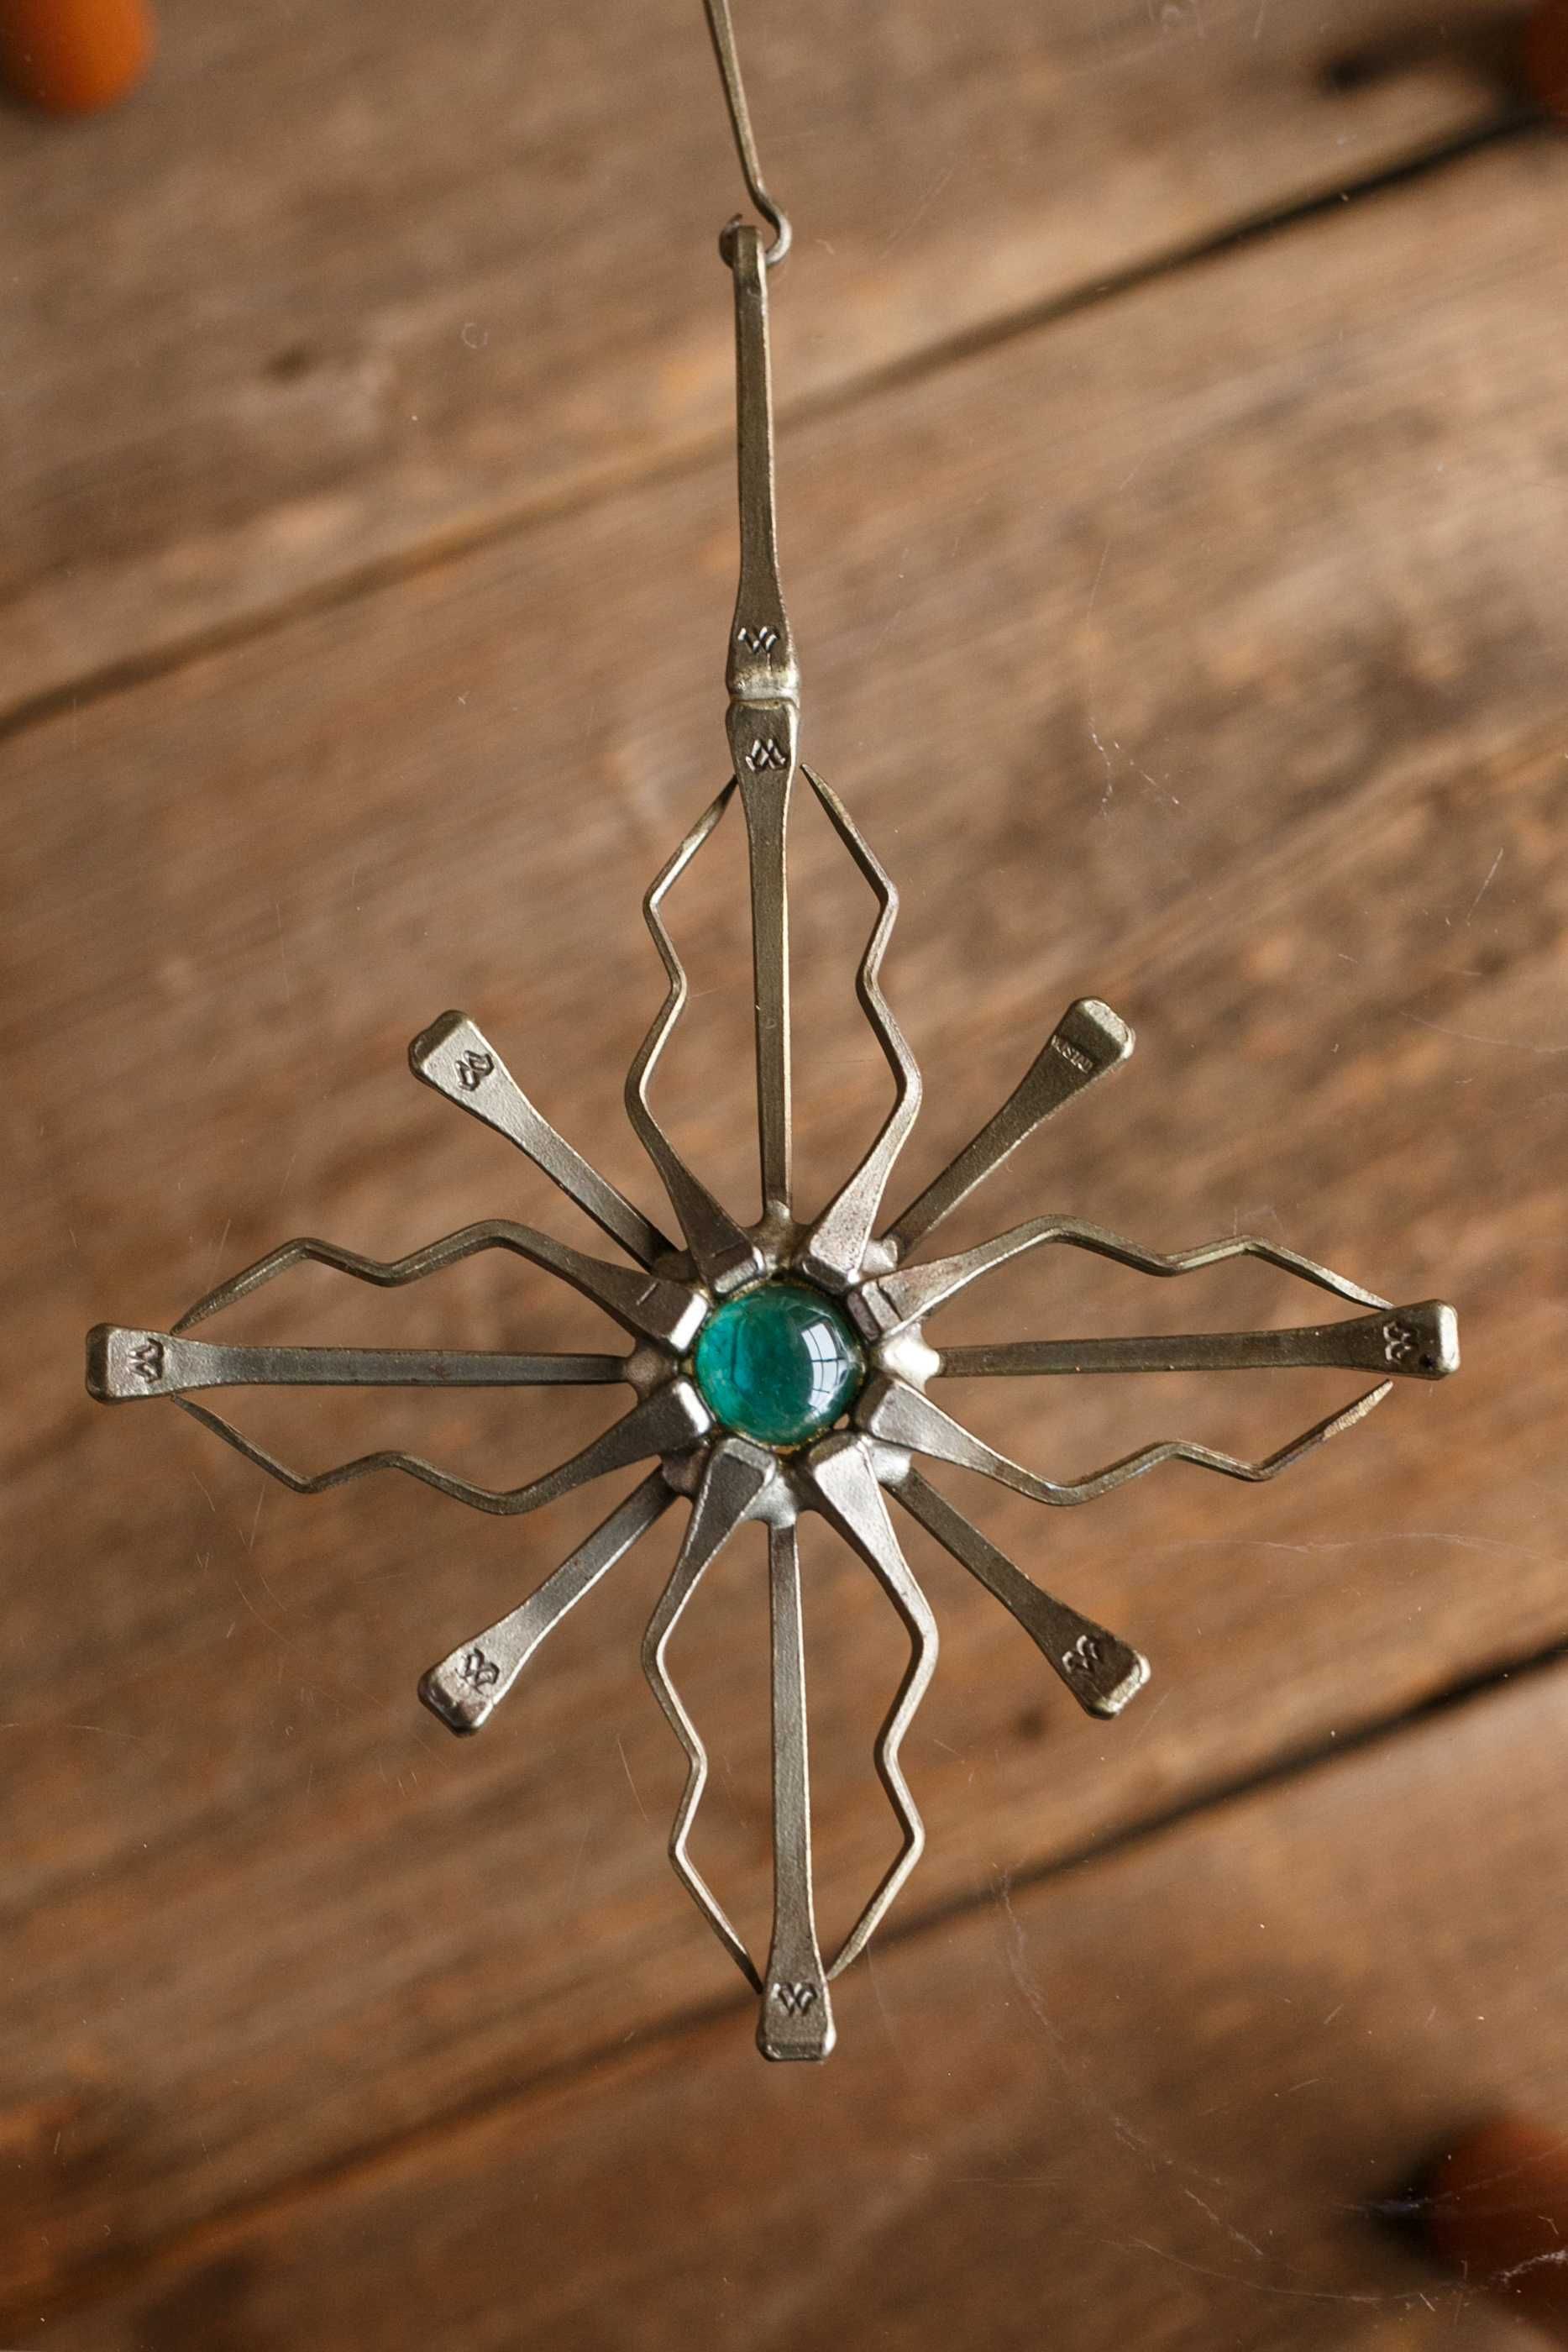 intrygująca metalowa dekoracja/krzyż ze szklanym oczkiem